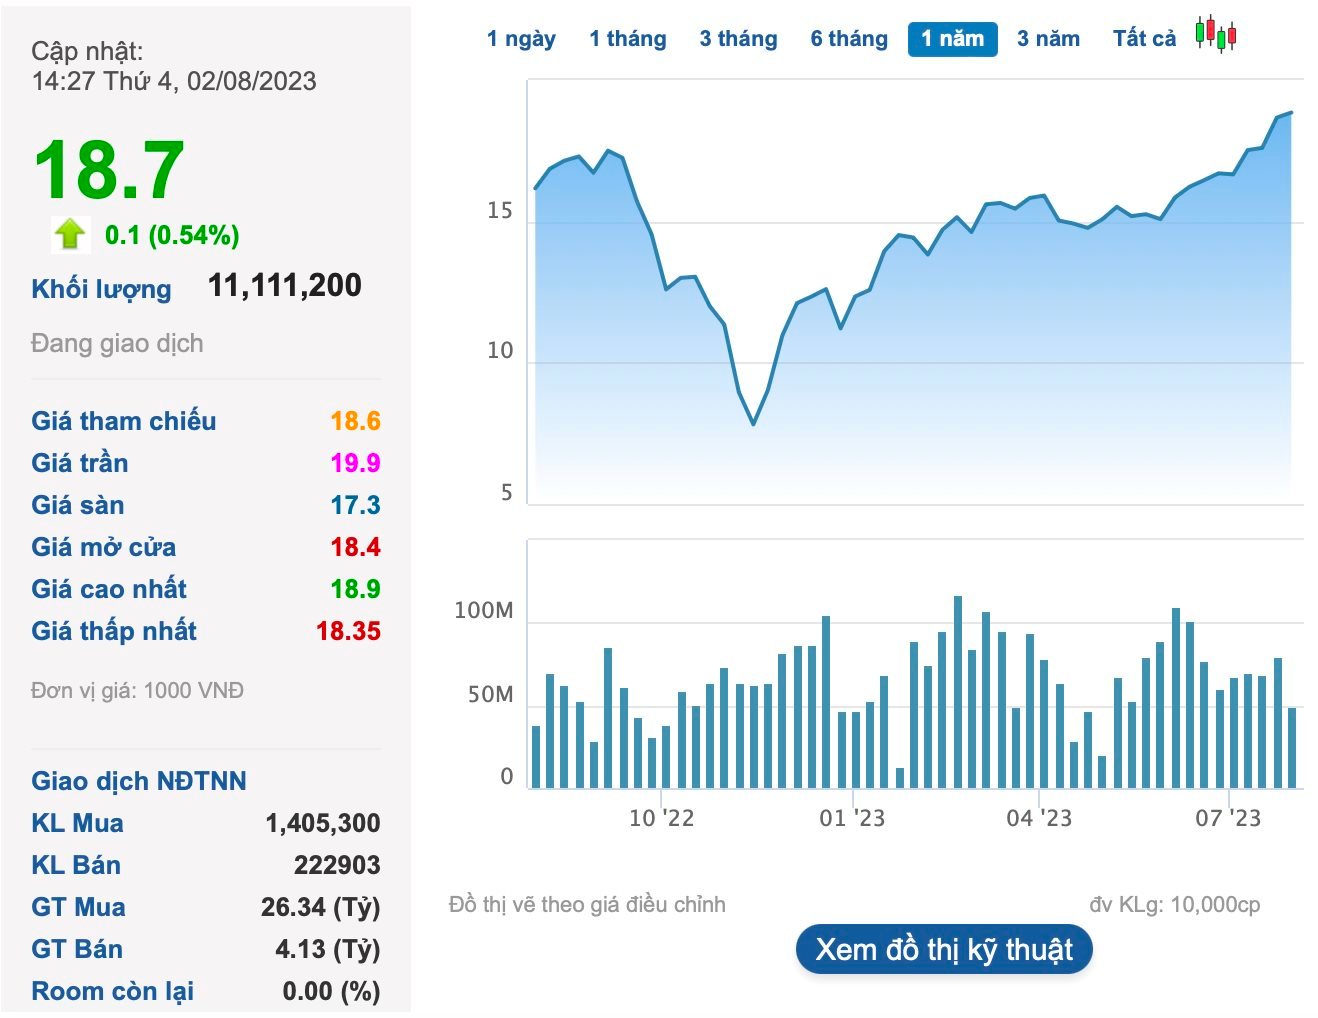 Nhóm Dragon Capital mua thêm gần 7 triệu cổ phiếu HSG tại vùng đỉnh 14 tháng - Ảnh 1.